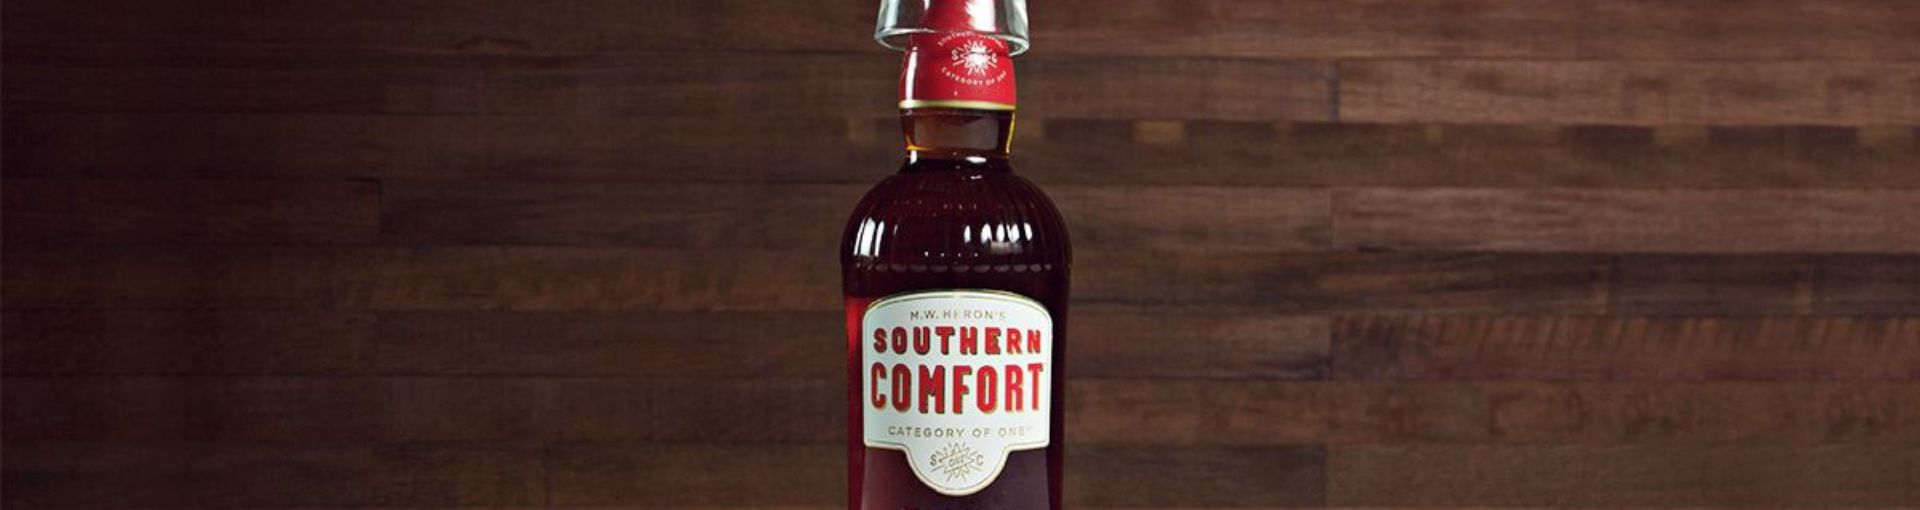 Eine Flasche Southern Comfort vor hölzernem Hintergrund